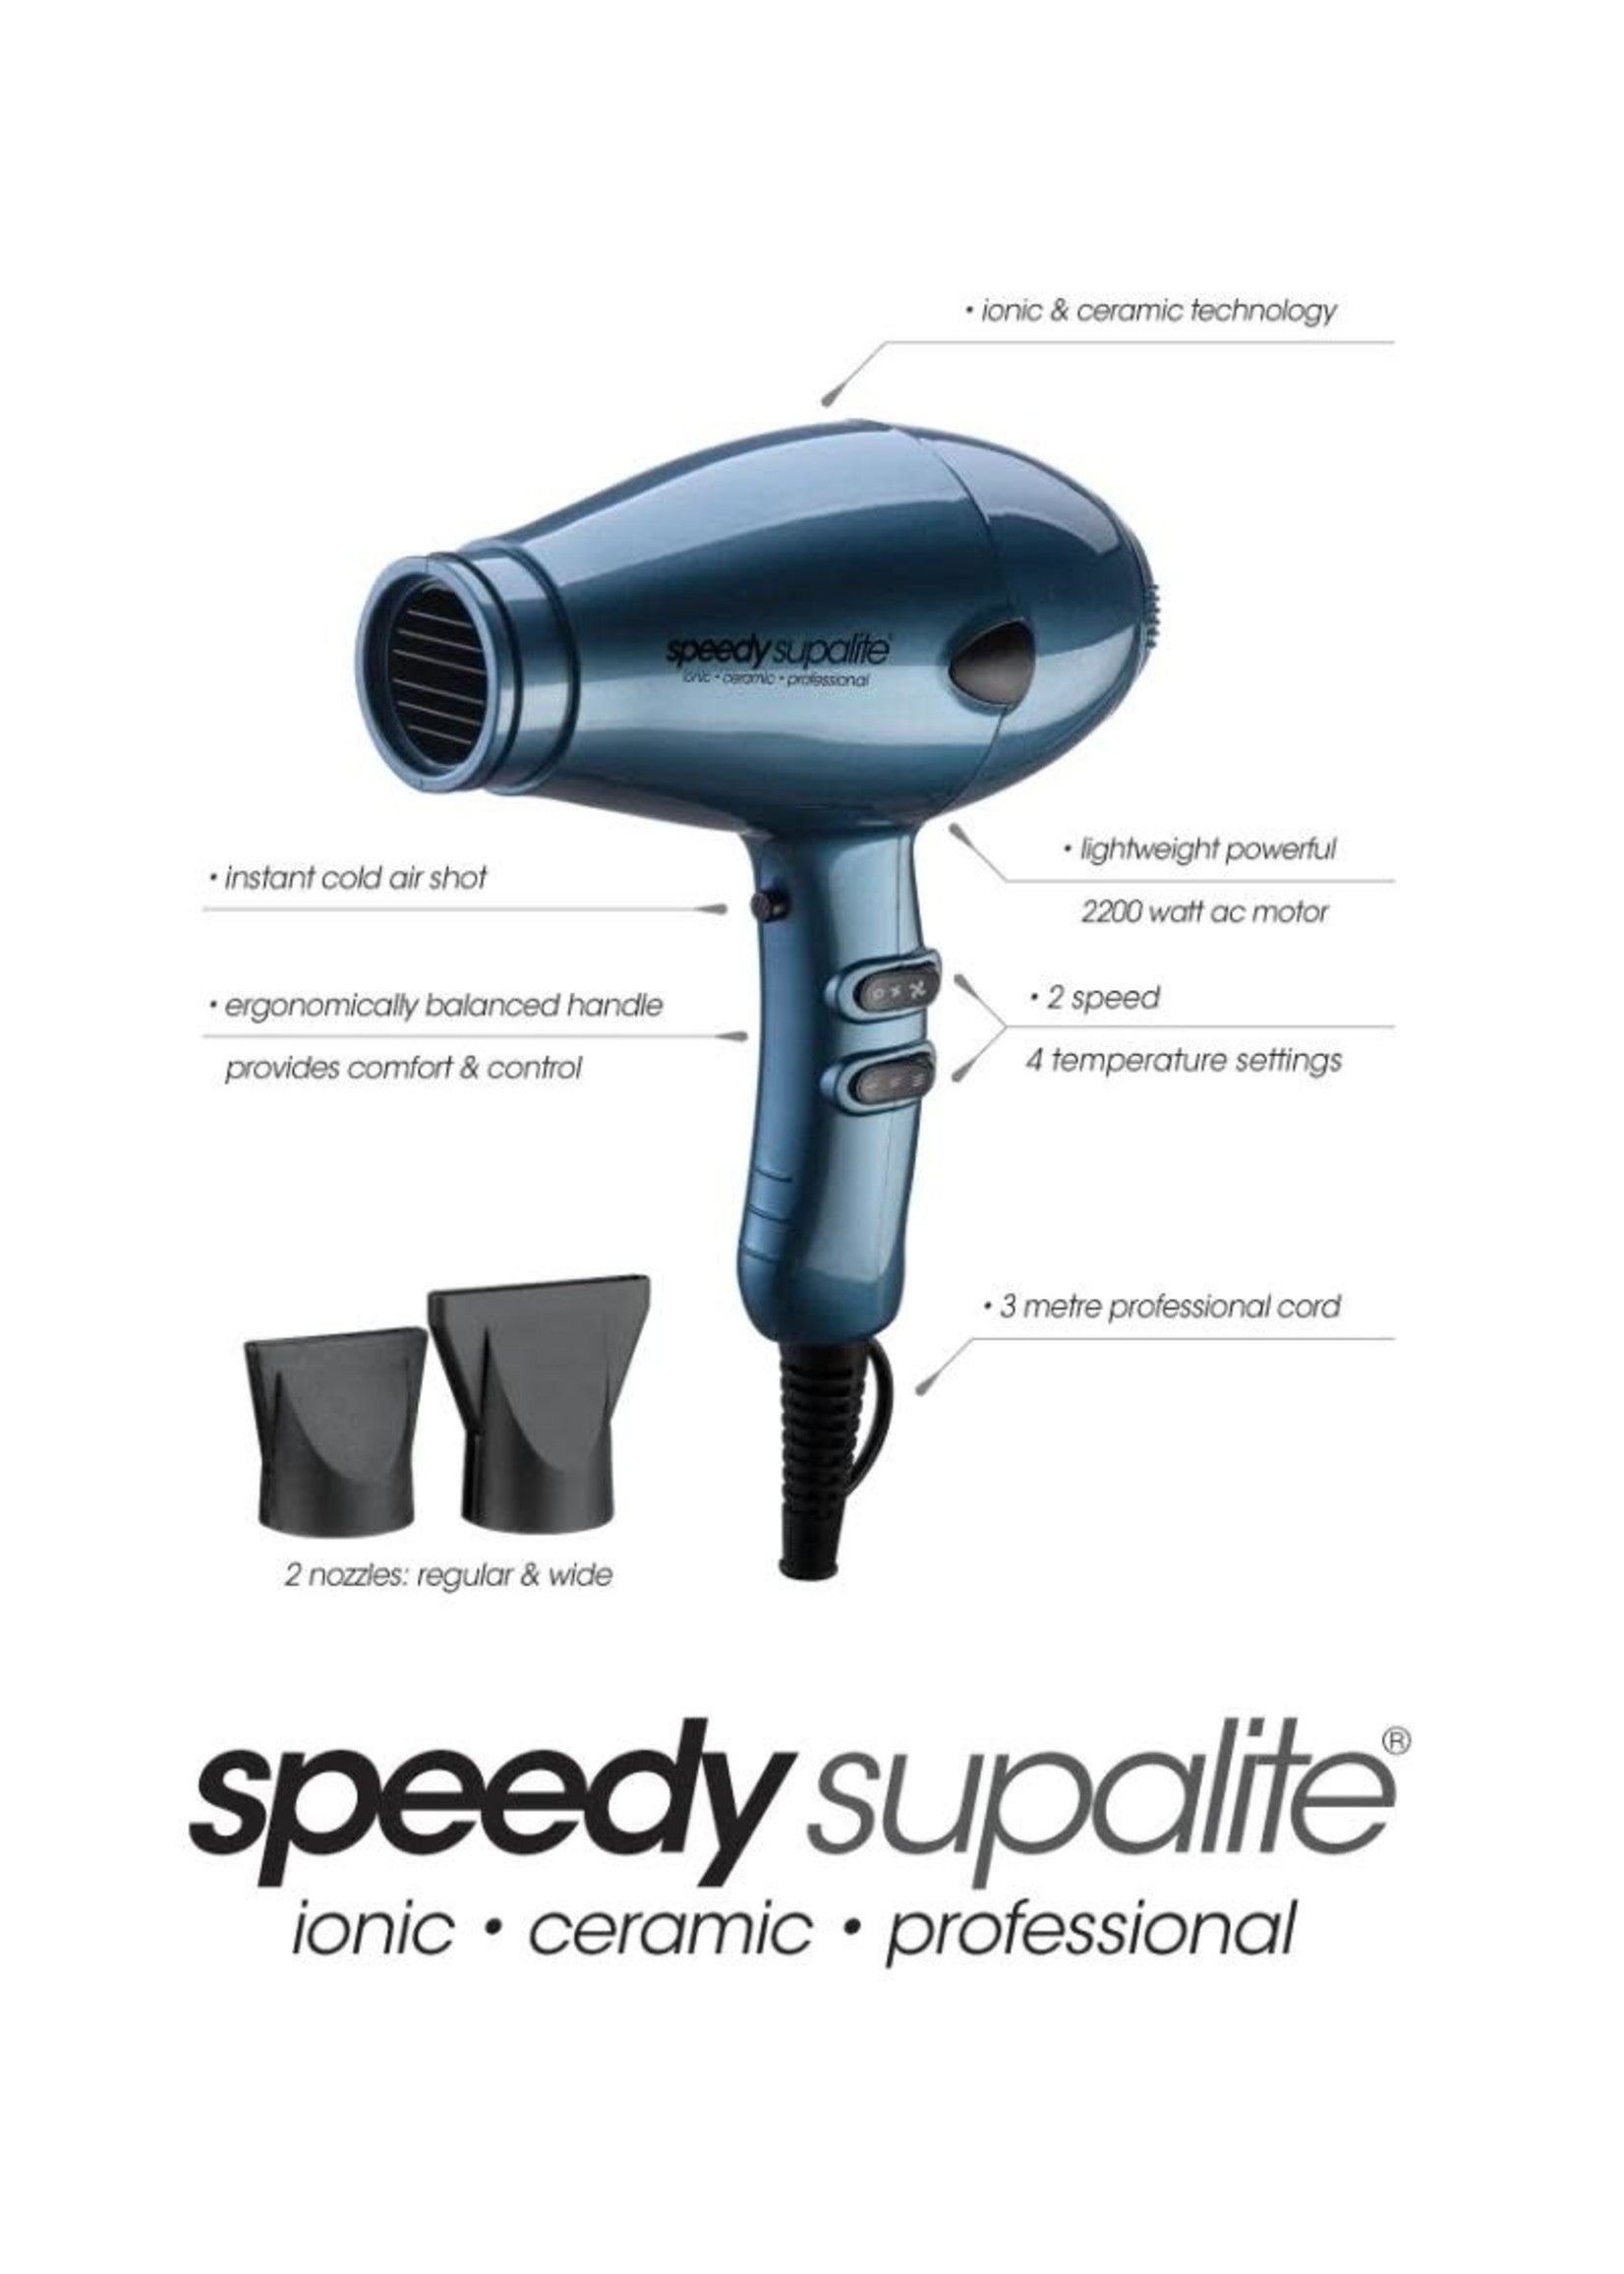 Speedy supalite hair dryer